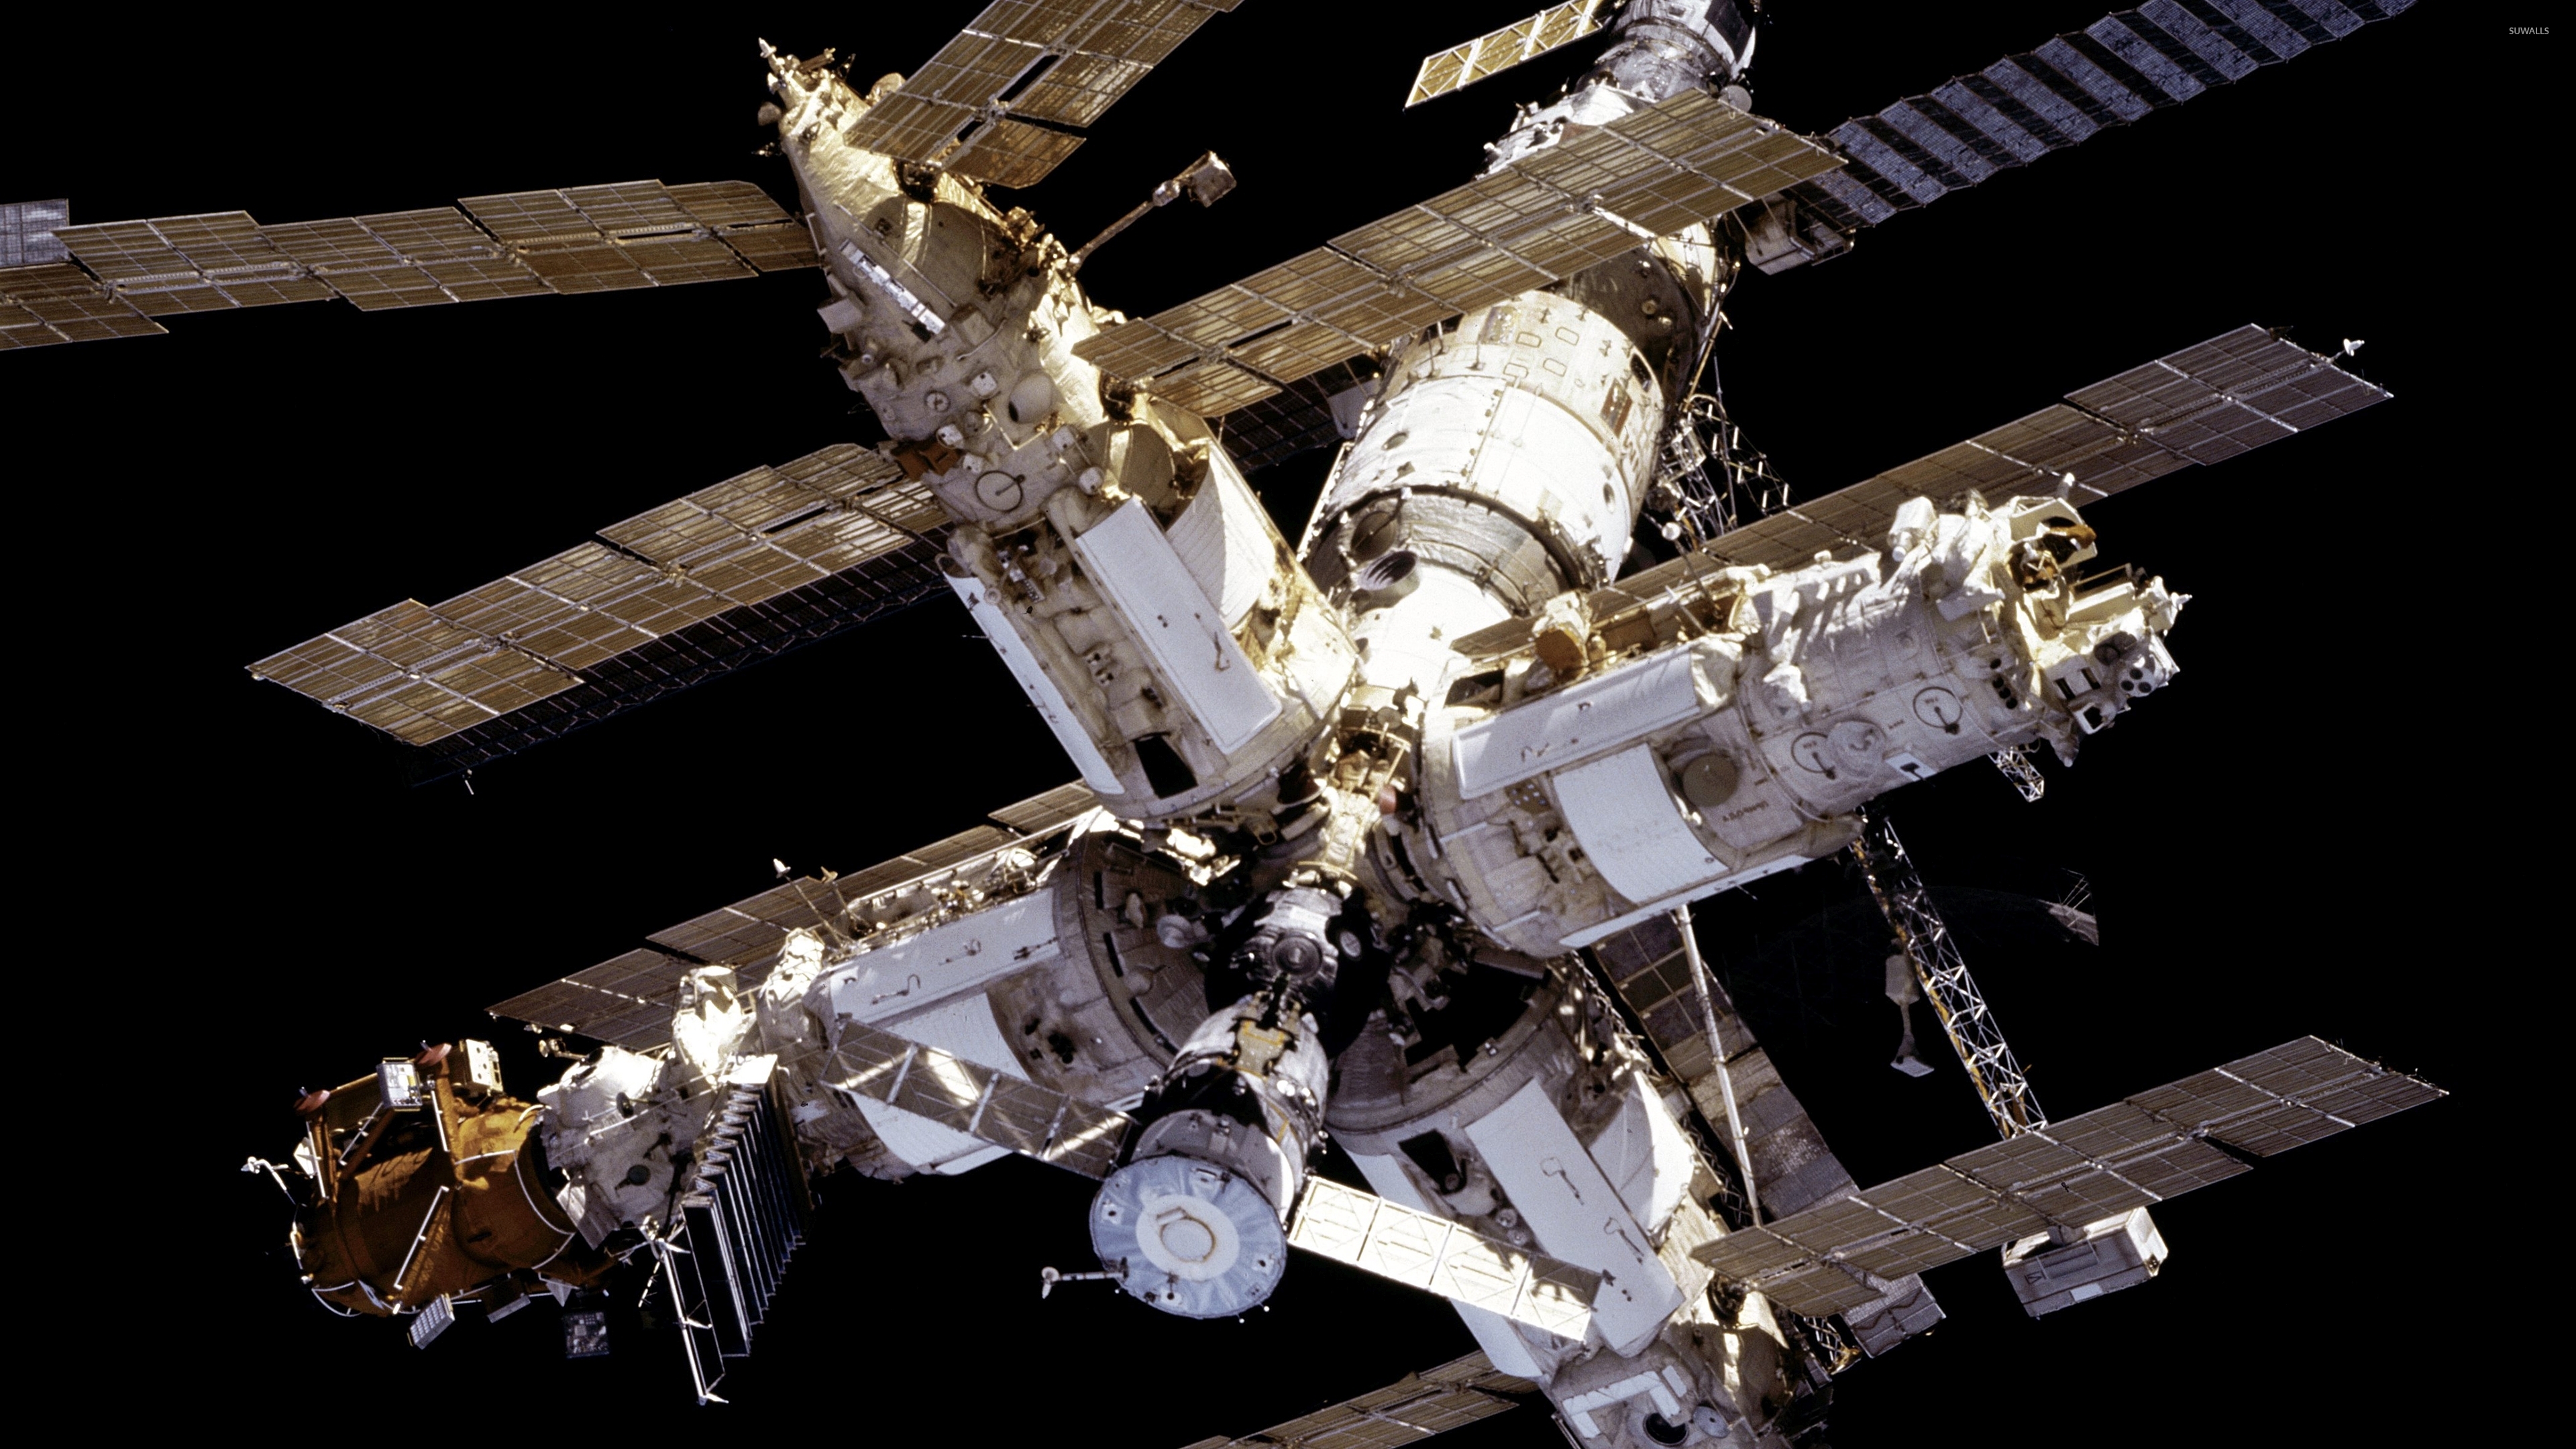 Советская станция в космосе. Станция мир 1986. Орбитальная станция мир 1986 года. Запуск космической орбитальной станции «мир». Космическая станция «мир» (20.02.1986-16.03.2001).